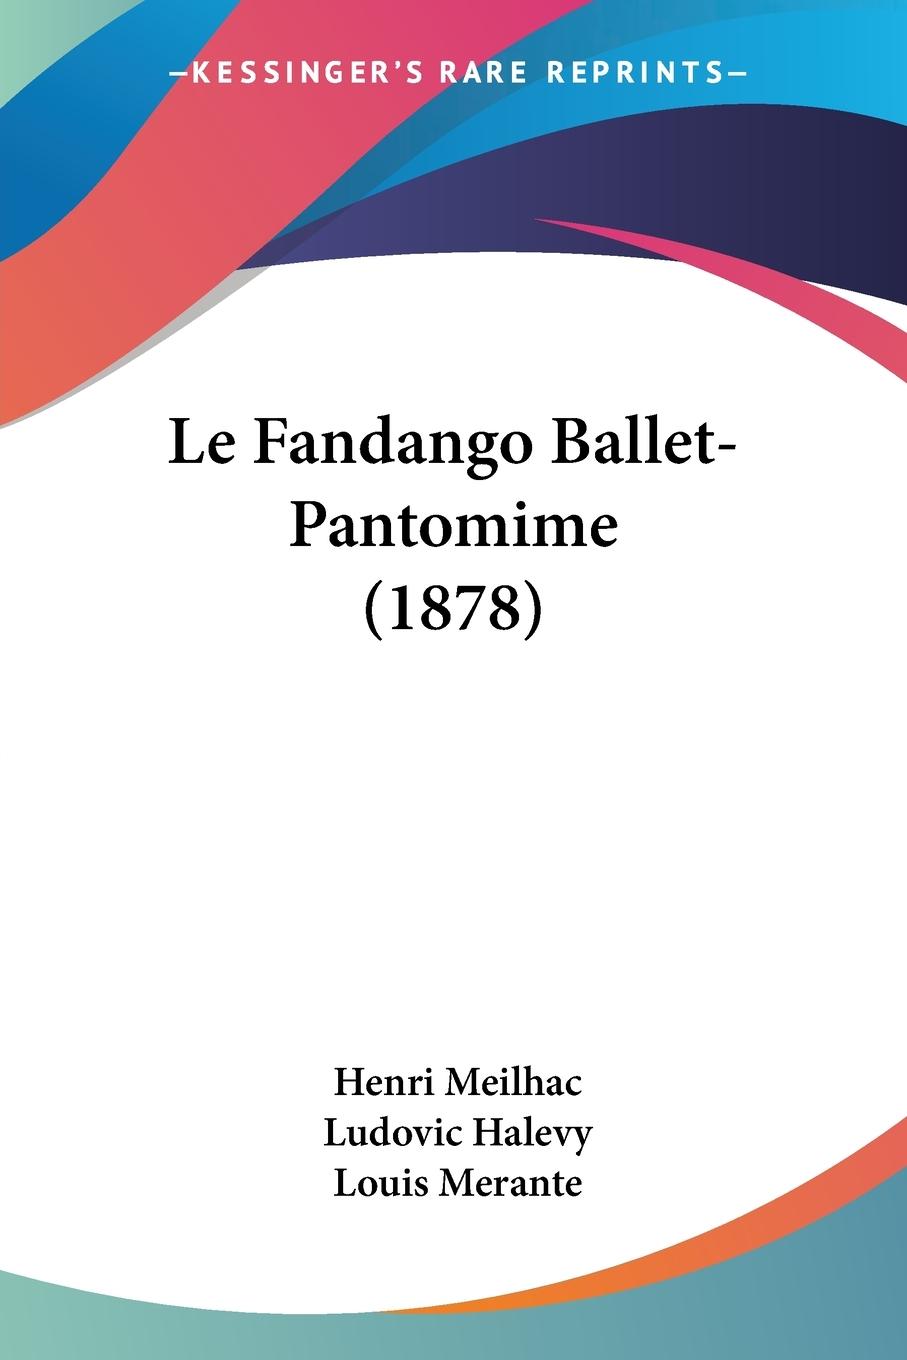 Le Fandango Ballet-Pantomime (1878) - Meilhac, Henri Halevy, Ludovic Merante, Louis